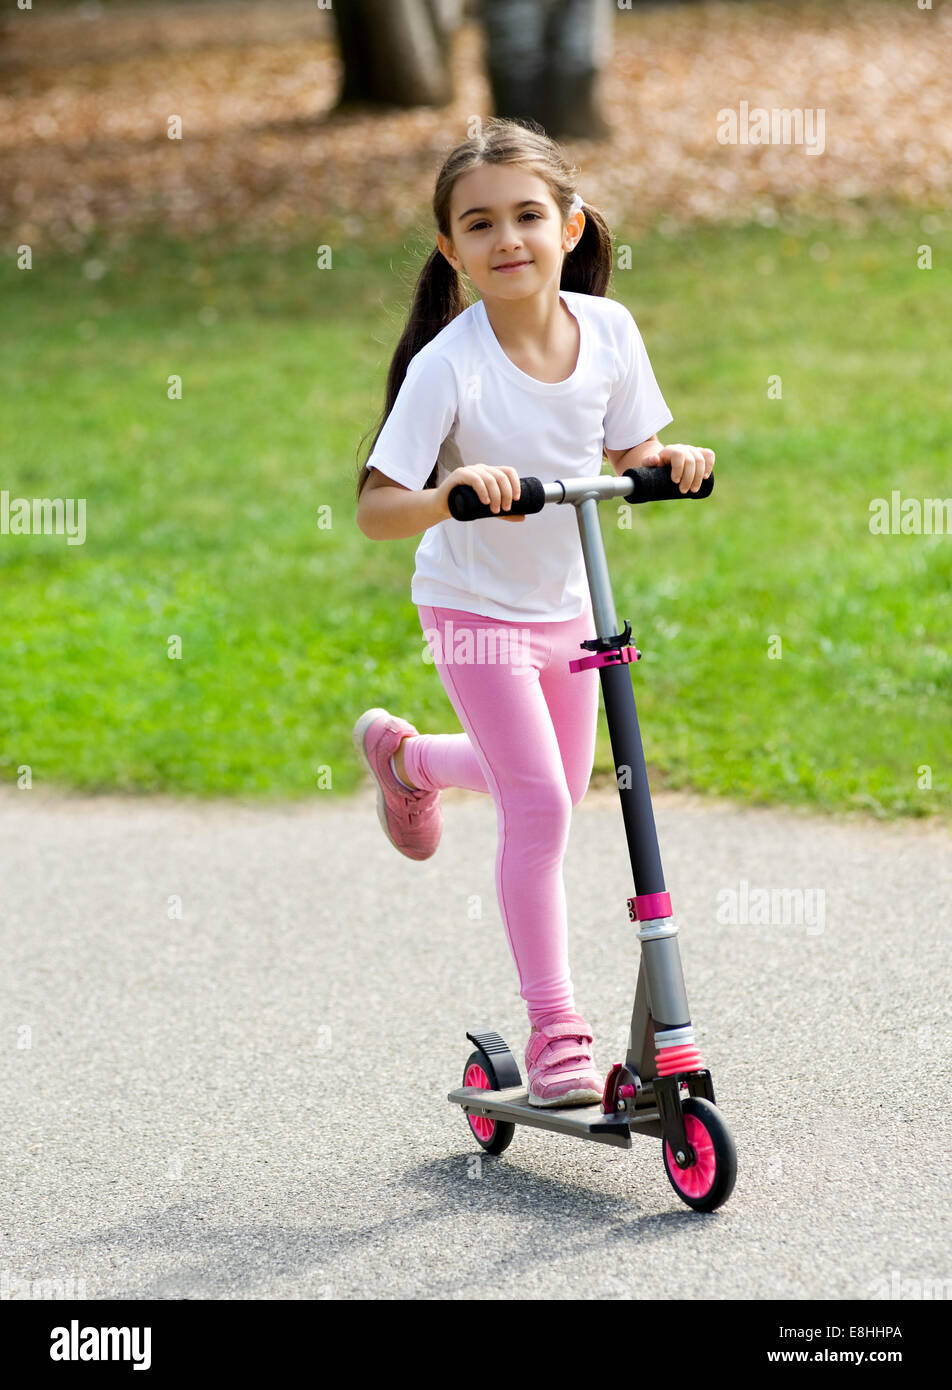 Jeune Fille en rose avec ses cheveux en amorces jouant sur un push scooter en plein air sur une route s'amusant et souriant Banque D'Images